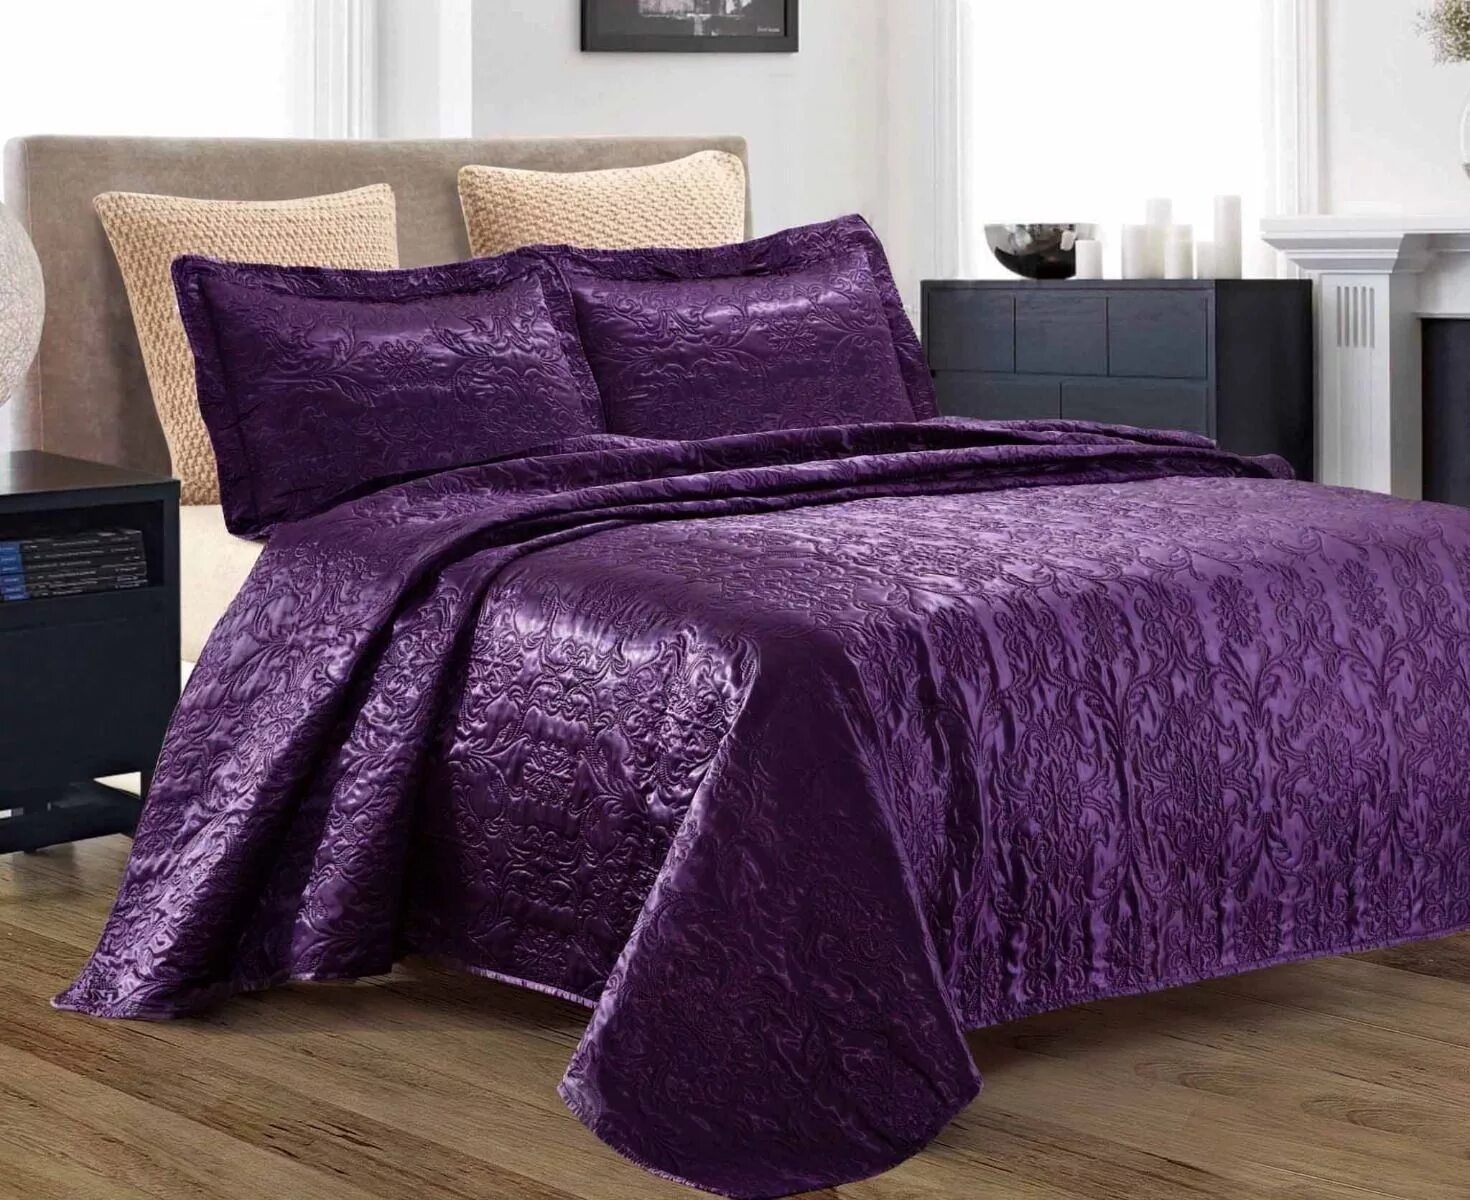 Вайлдберриз покрывало на кровать. Сиреневое покрывало на кровать. Покрывало на кровать сиреневого цвета. Покрывало Черничного цвета. Покрывало фиолетовое на кровать.